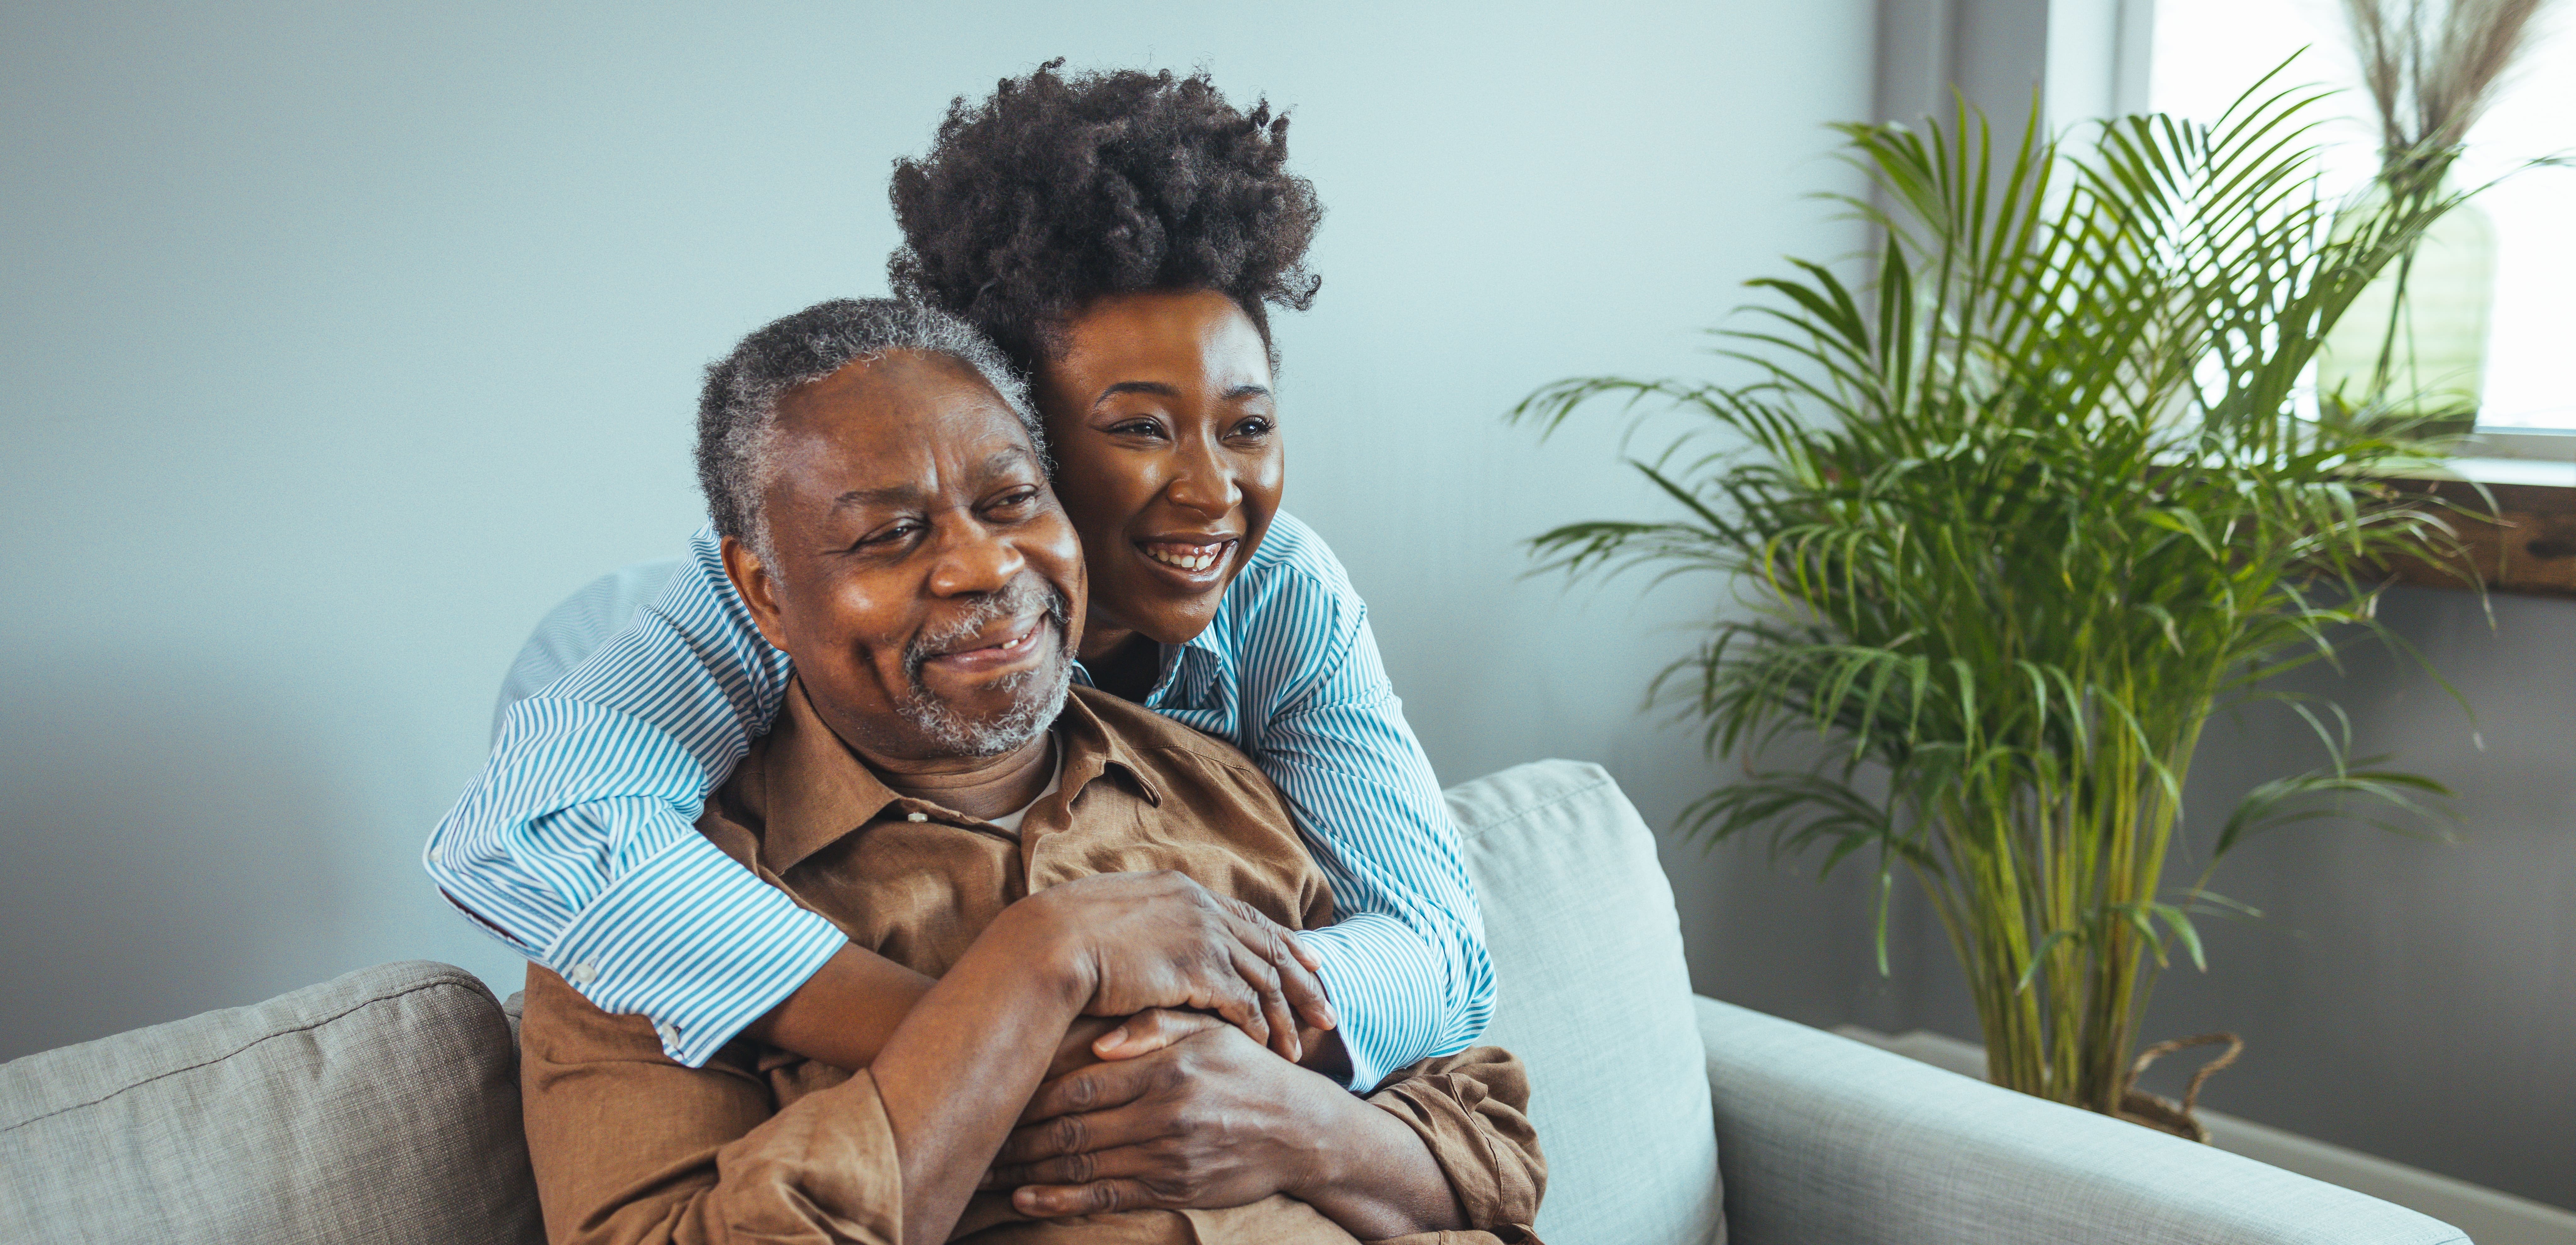 A caregiver embracing her older loved one